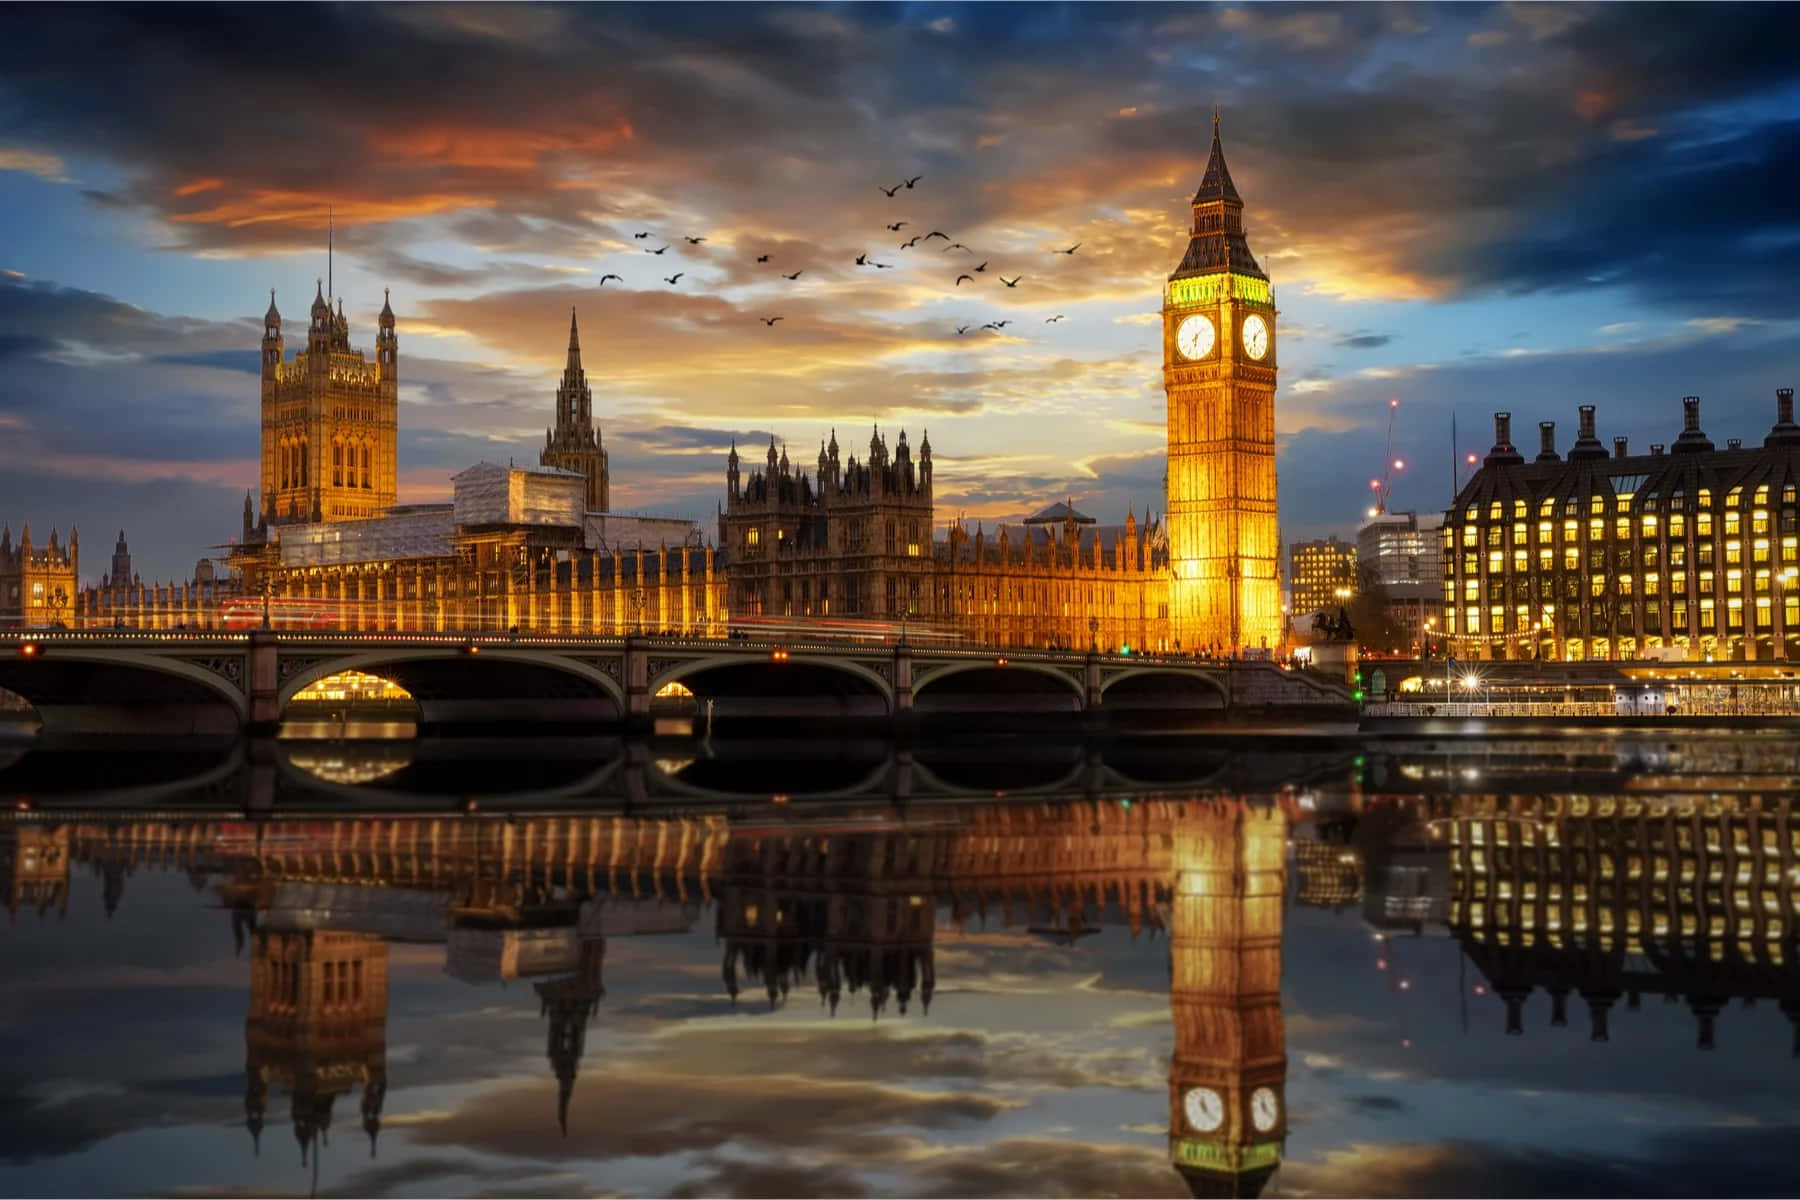 Bigben Og Parlamentsbygningerne Ved Solnedgang I London.